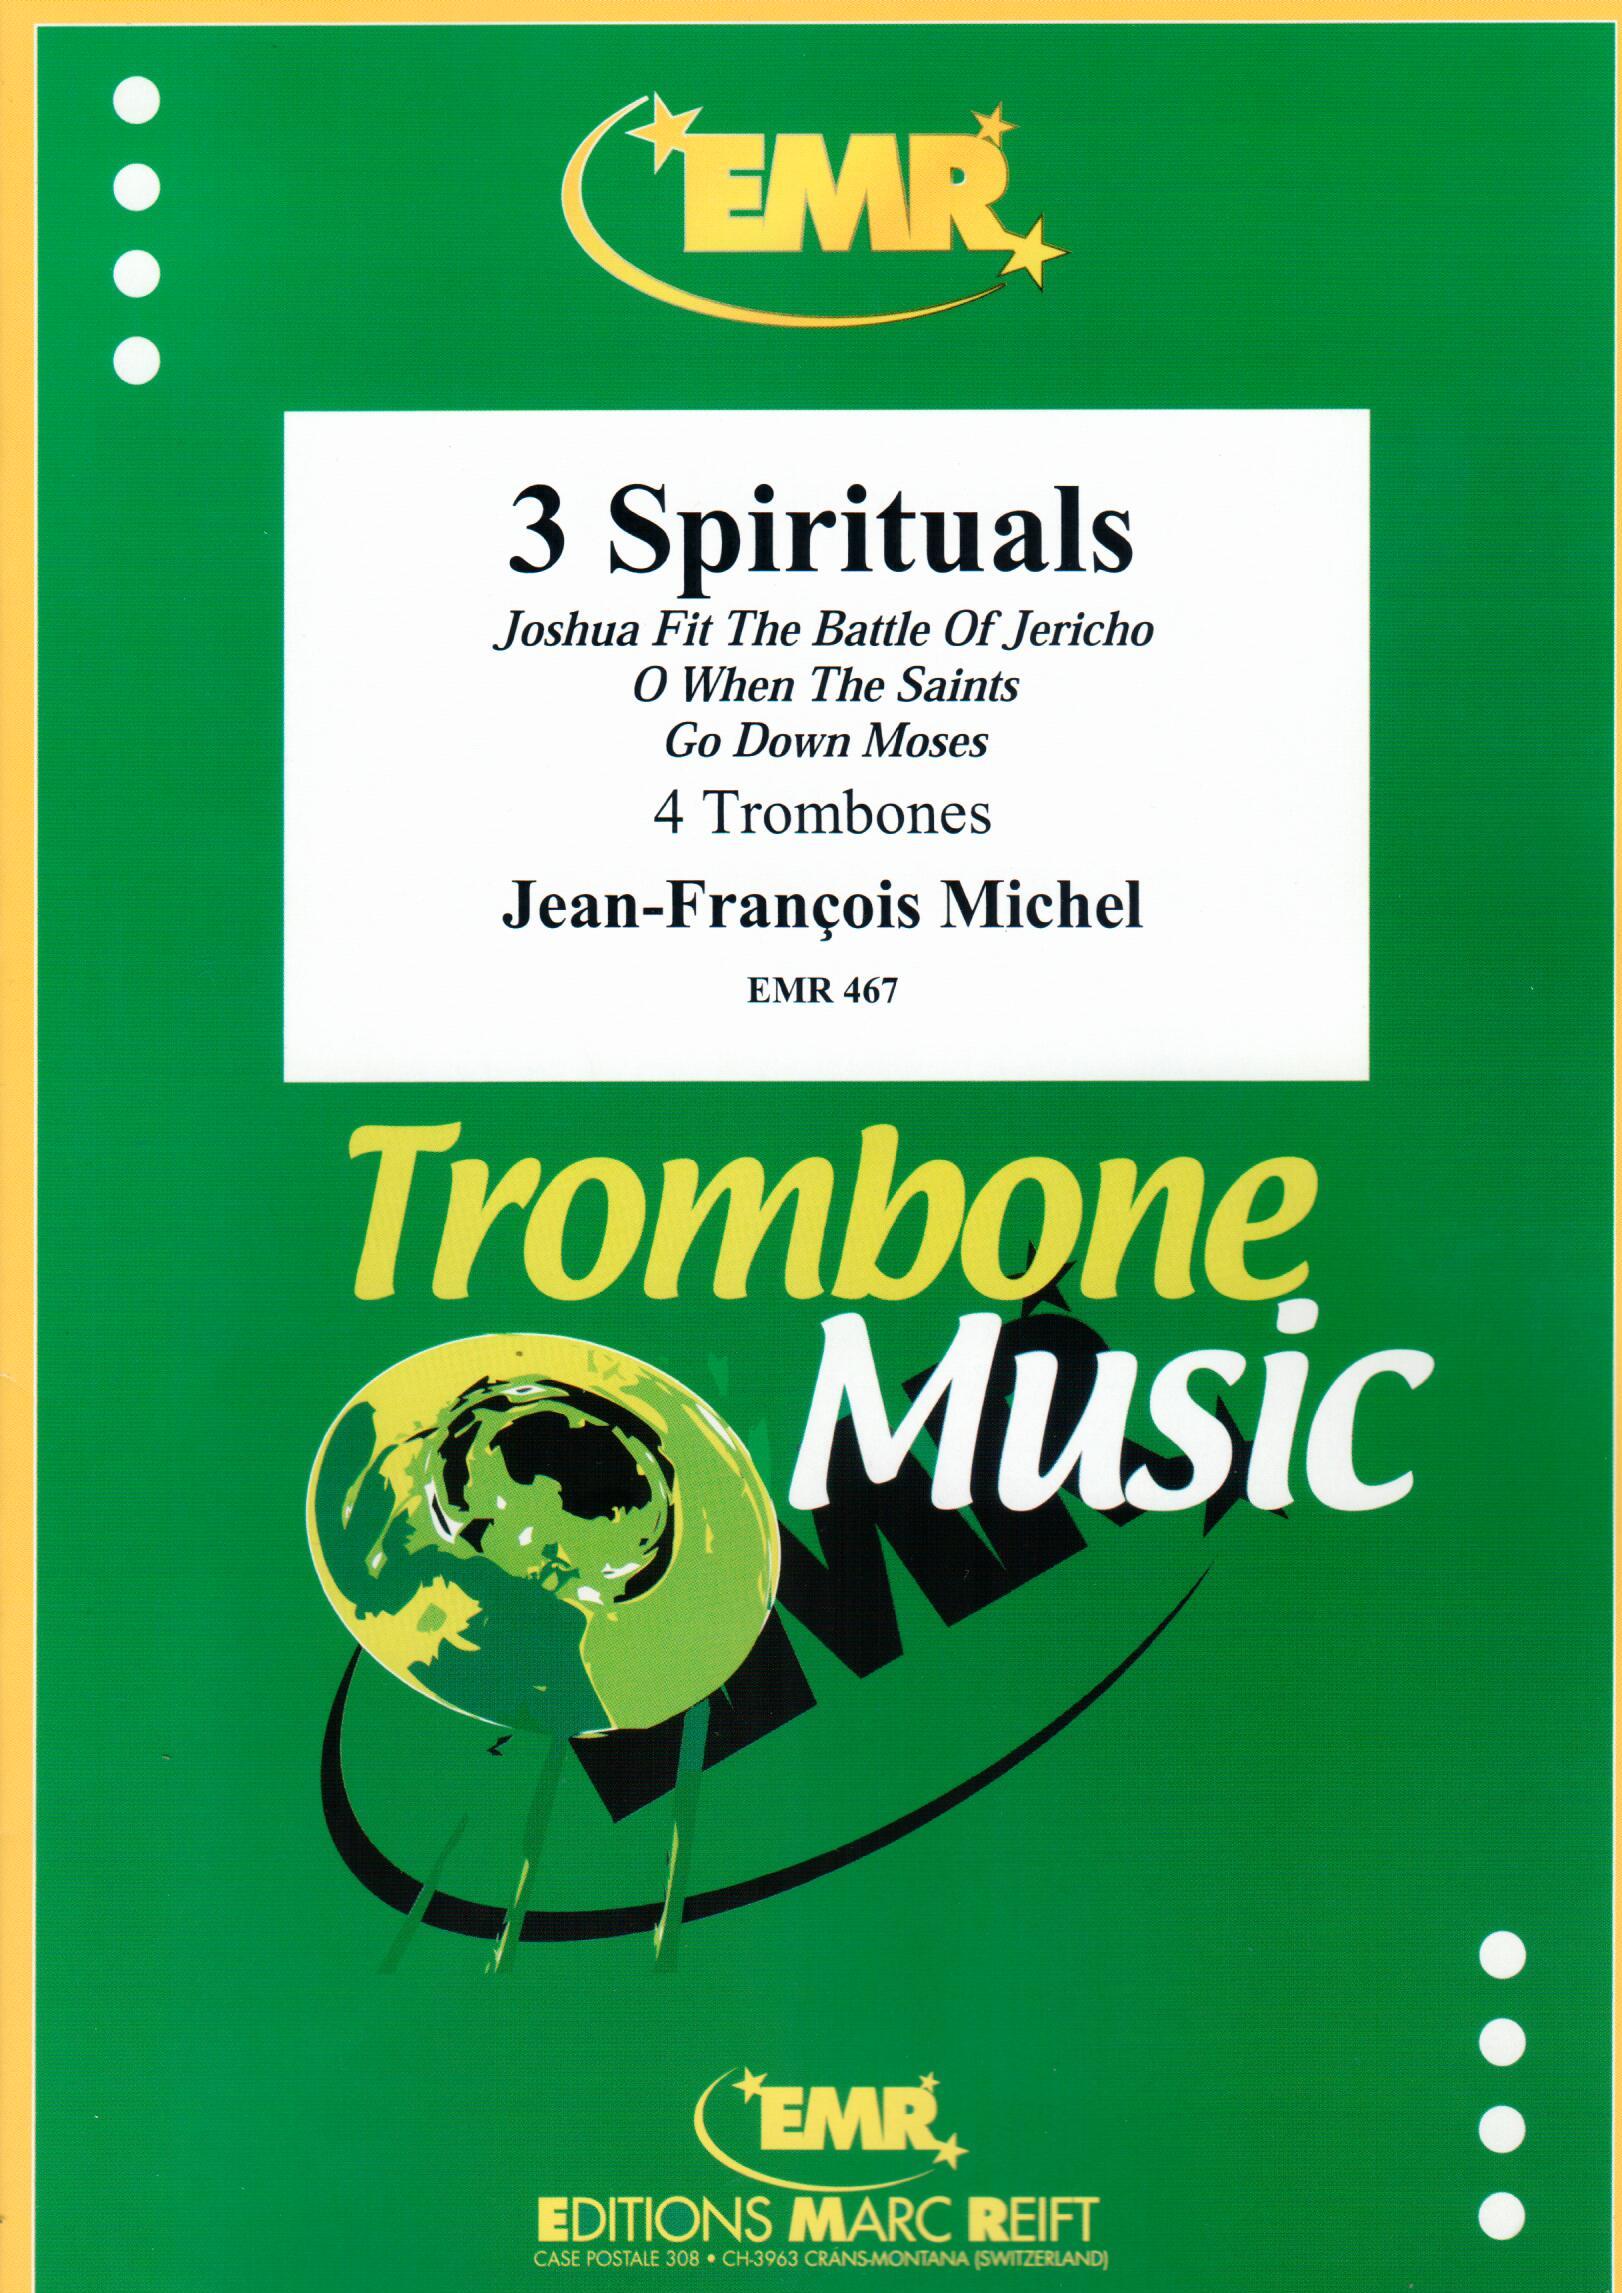 3 SPIRITUALS, SOLOS - Trombone